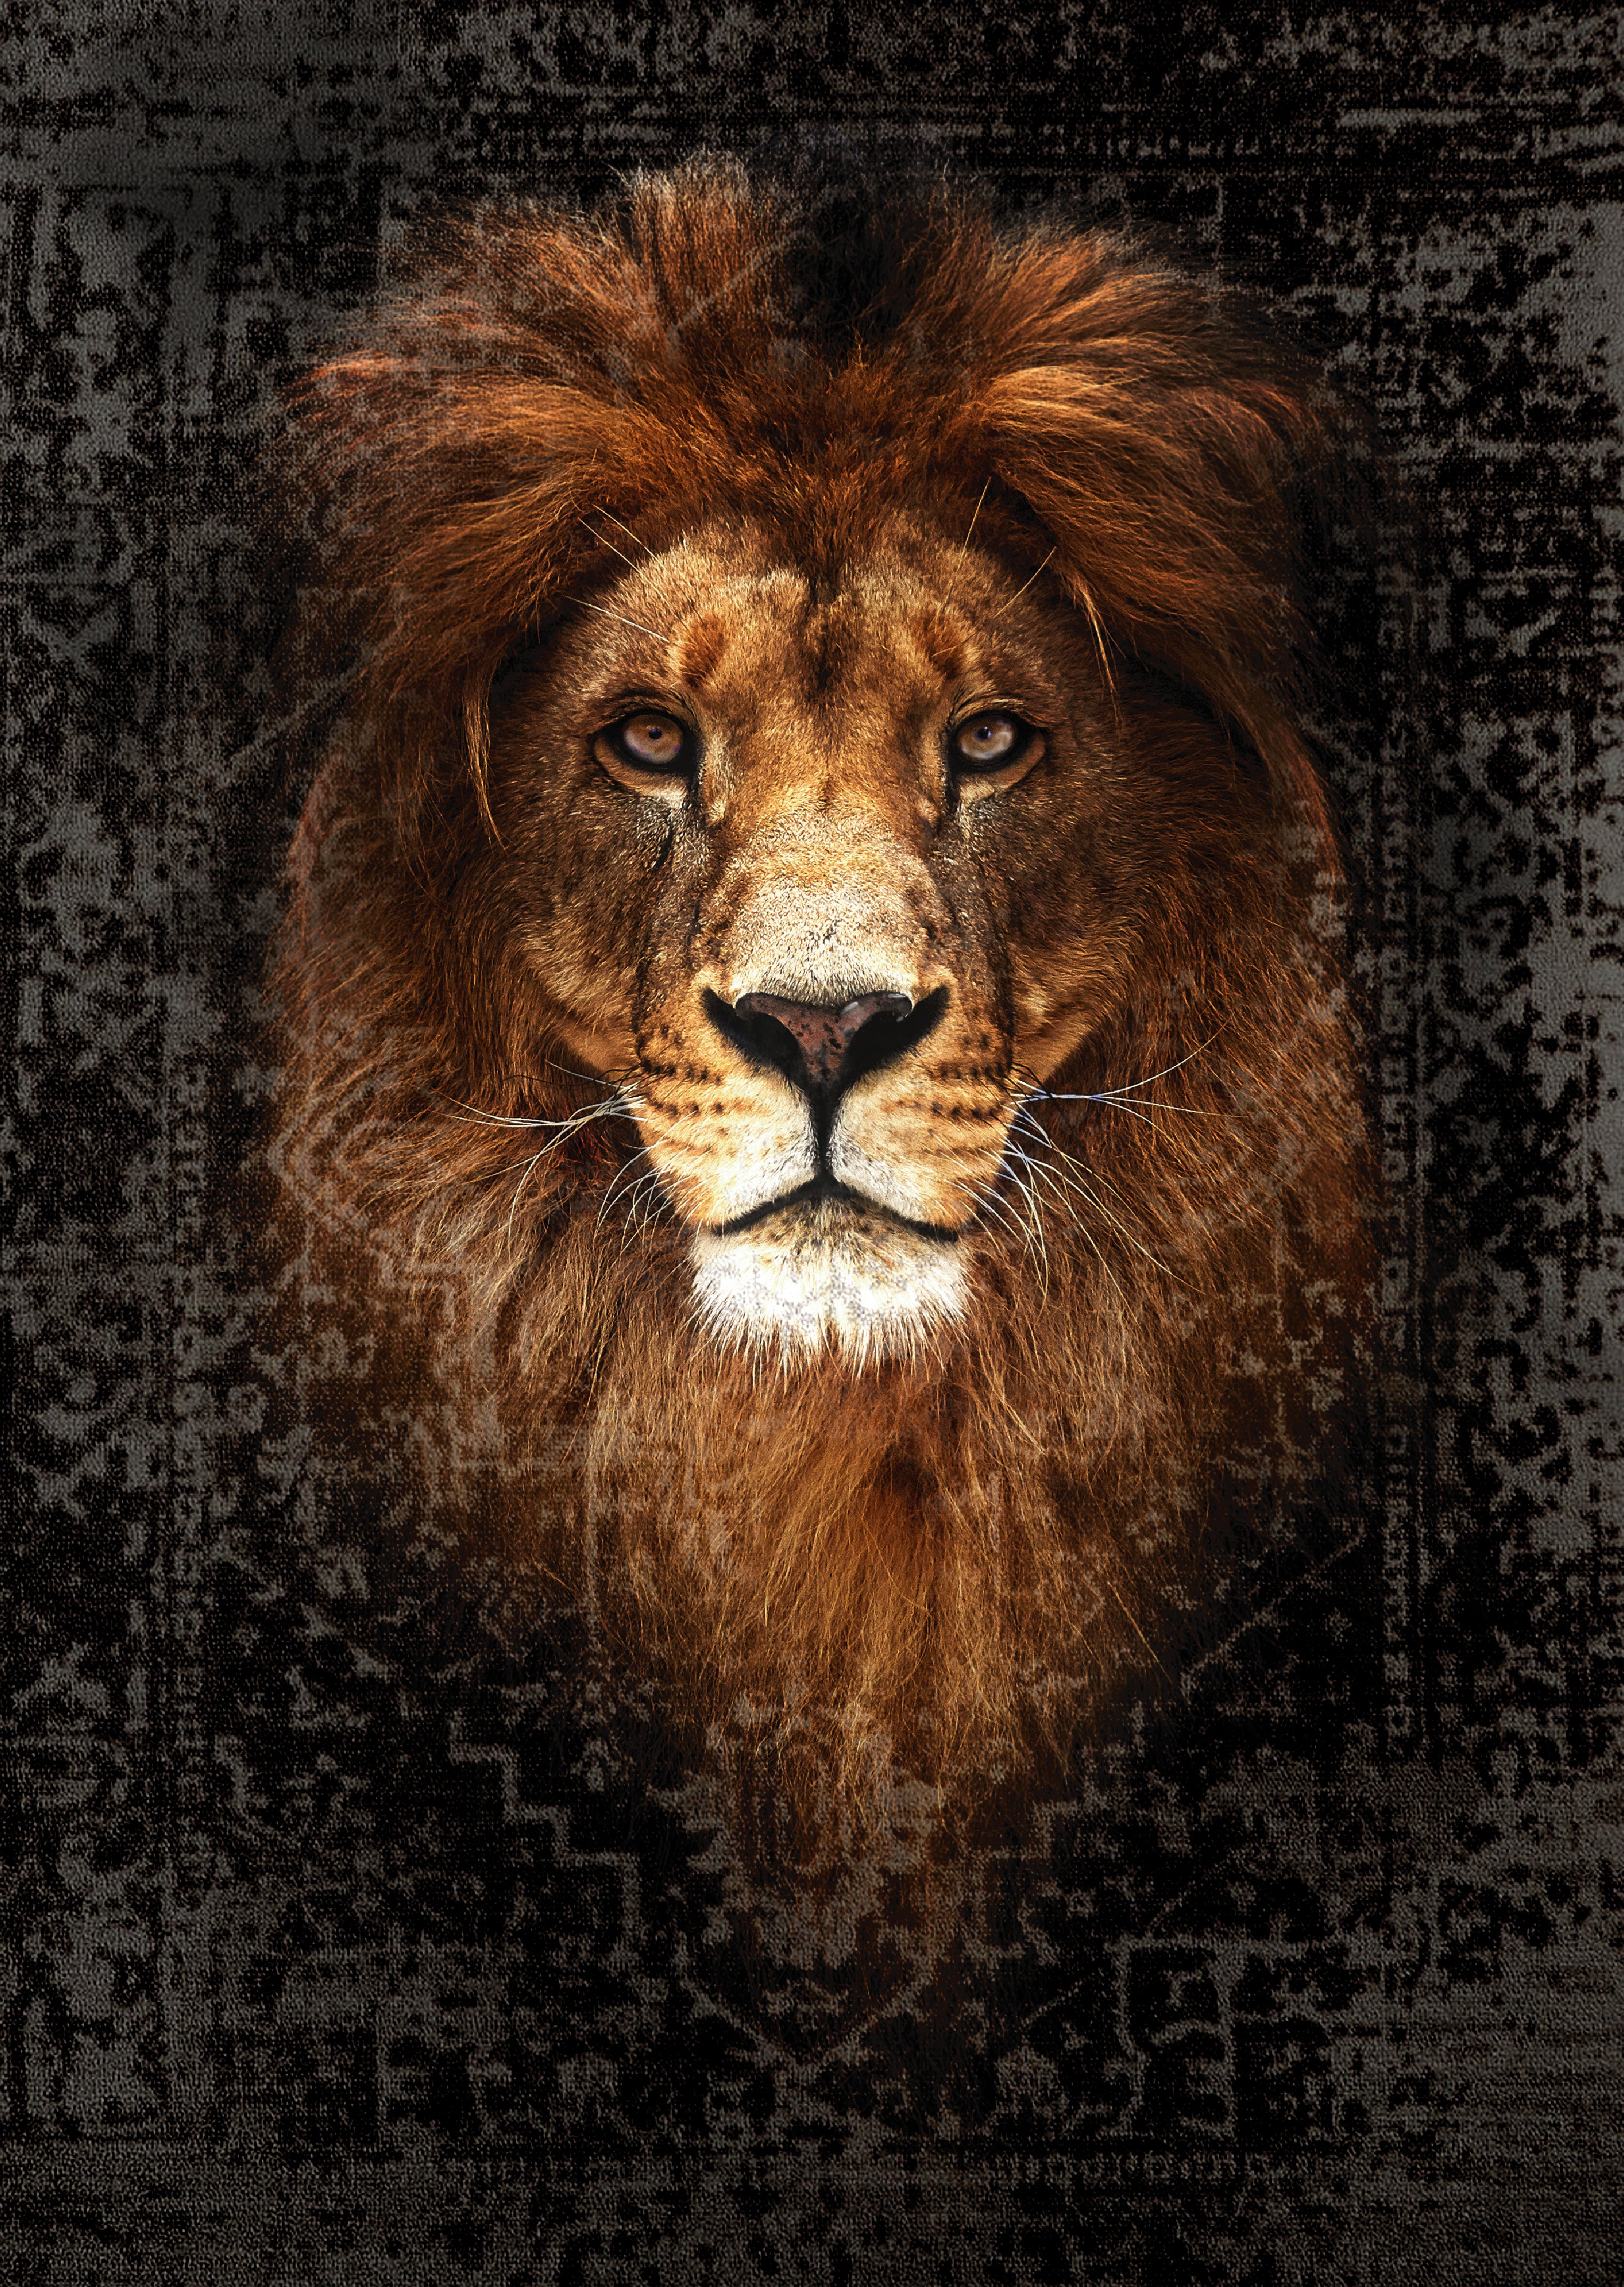 LUXURY LION ART